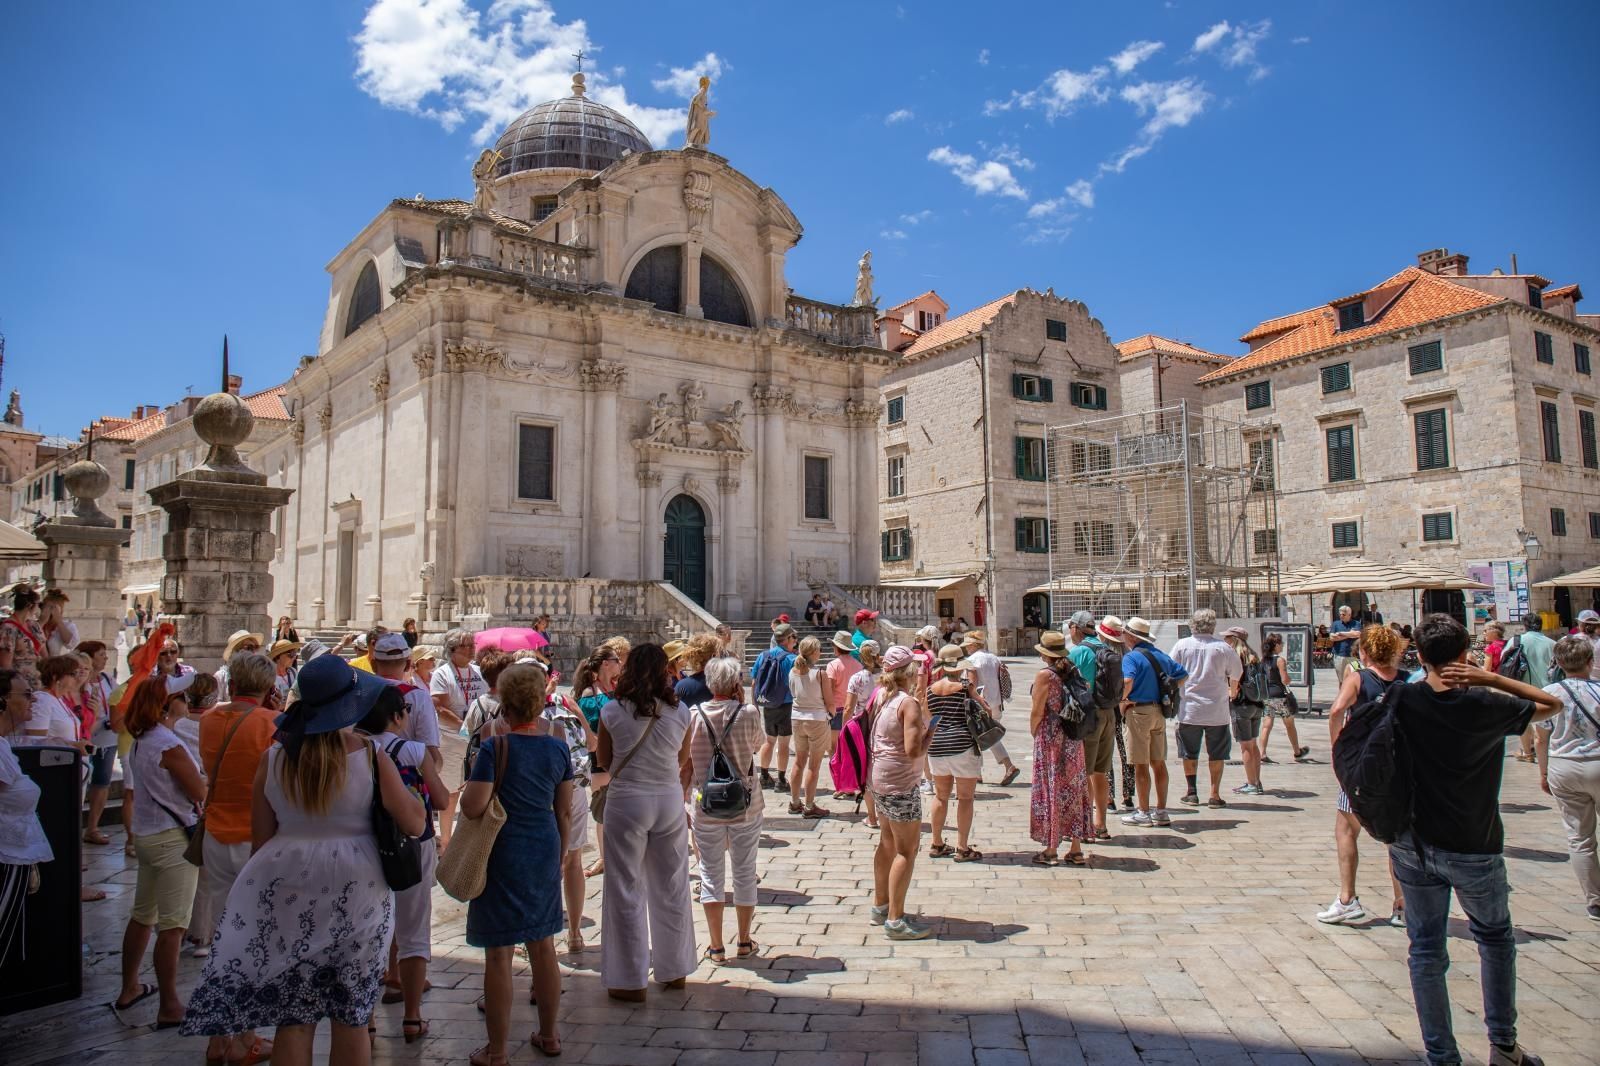 15.06.2021., Stara gradska jezgra, Dubrovnik - Sve brojnije grupe gostiju u gradu. Prava sezona pocinje.
Photo: Grgo Jelavic/PIXSELL